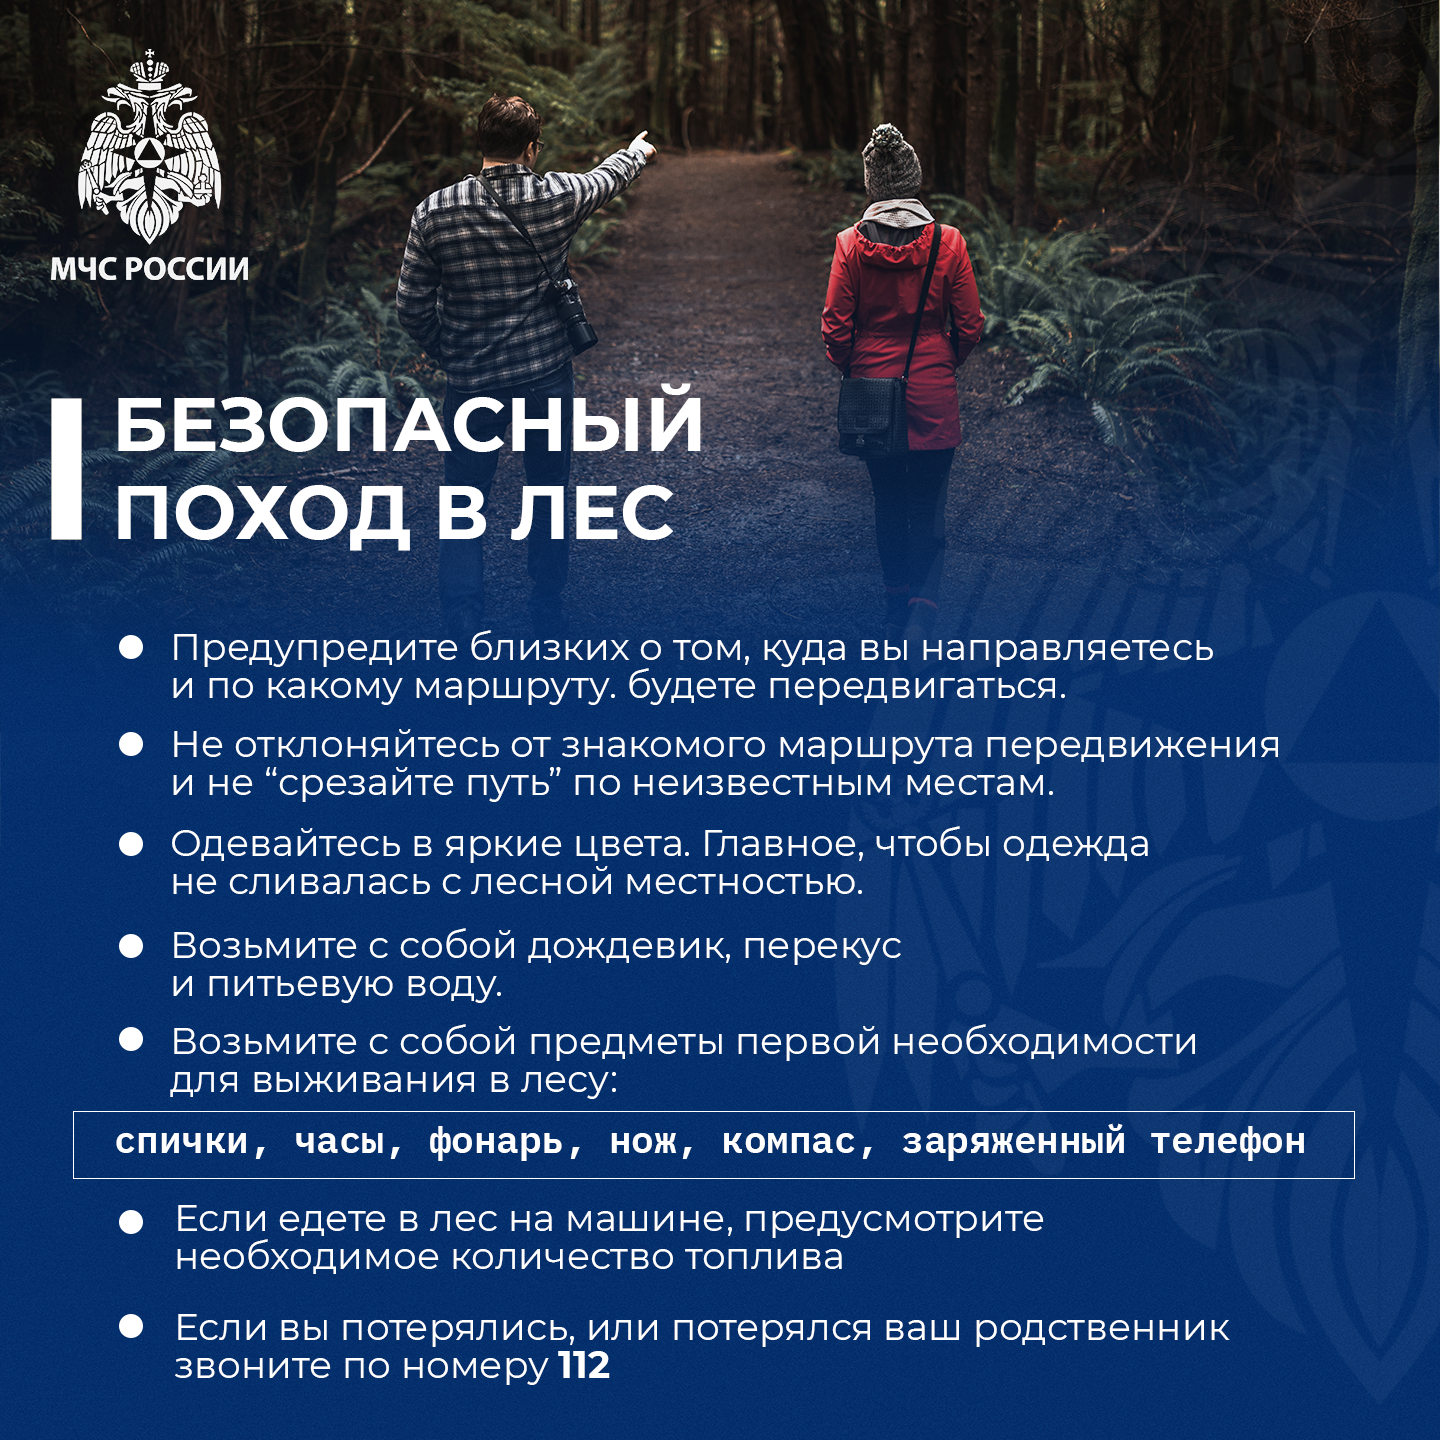 МЧС России: Безопасный поход в лес